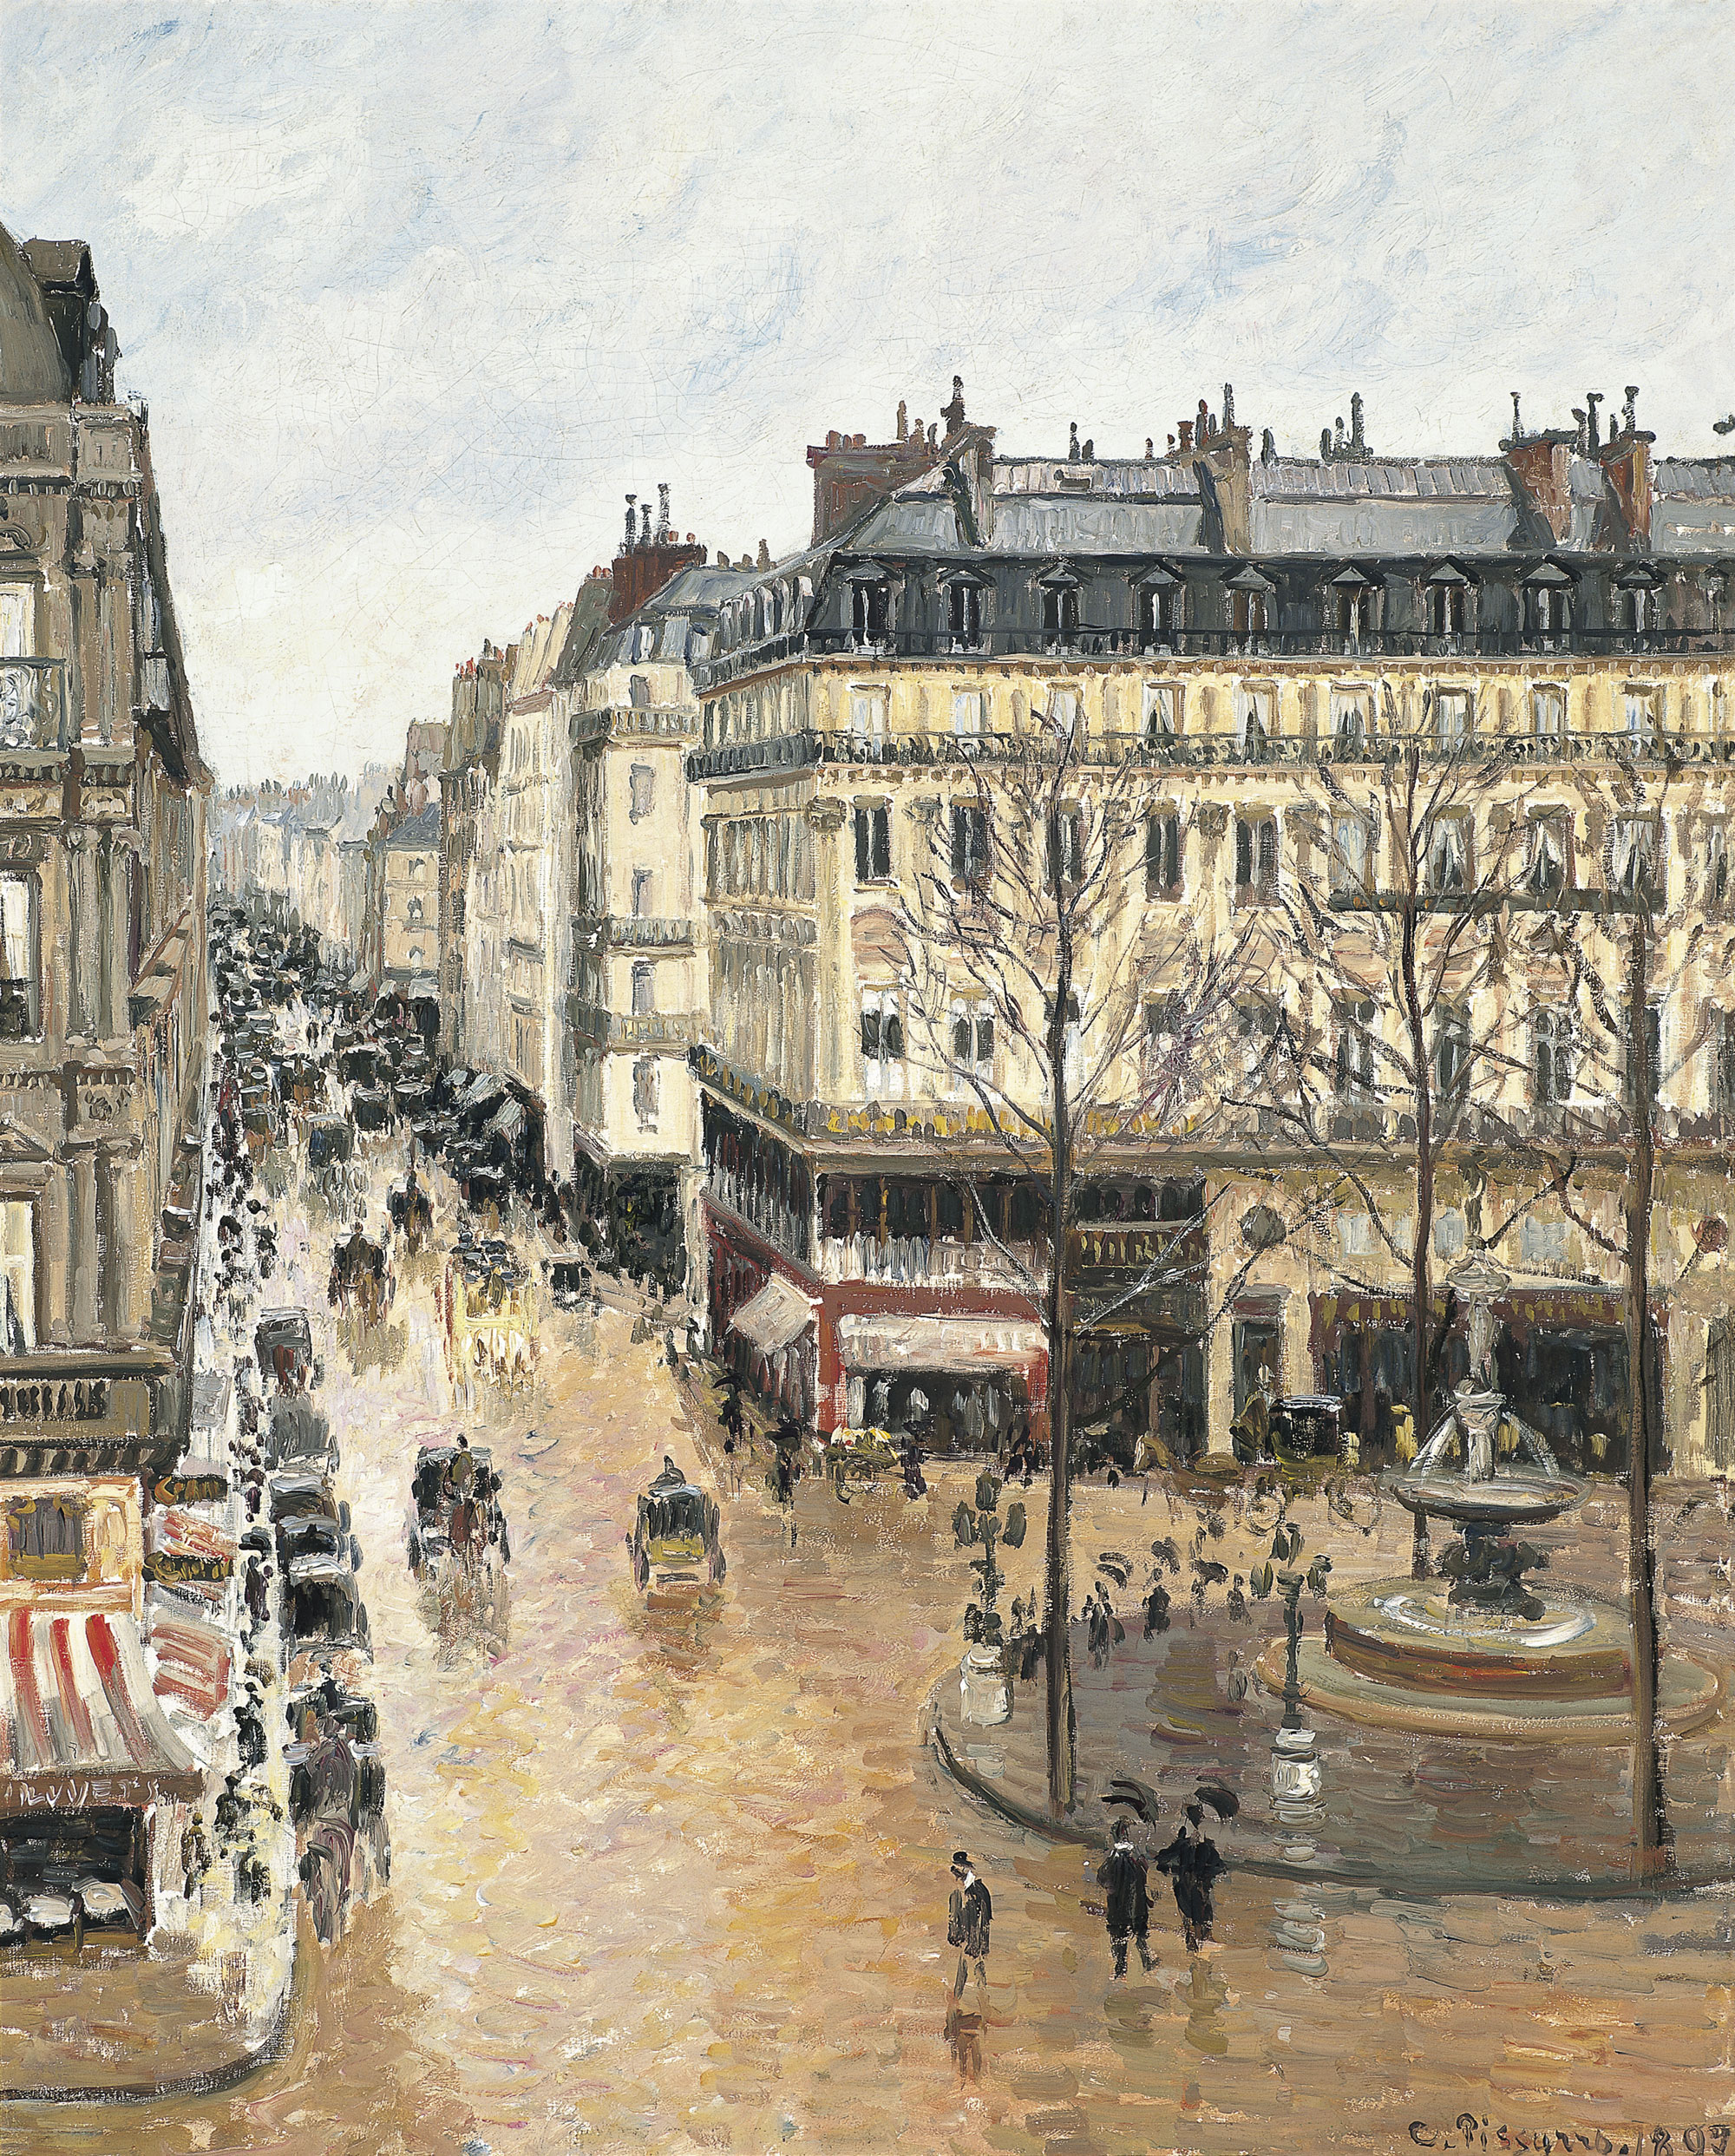 Camille Pissarro, “Rue Saint-Honoré, Après-midi, Effet de Pluie” (1897), oil on canvas (via Thyssen-Bornemisza Museum/Wikimedia)